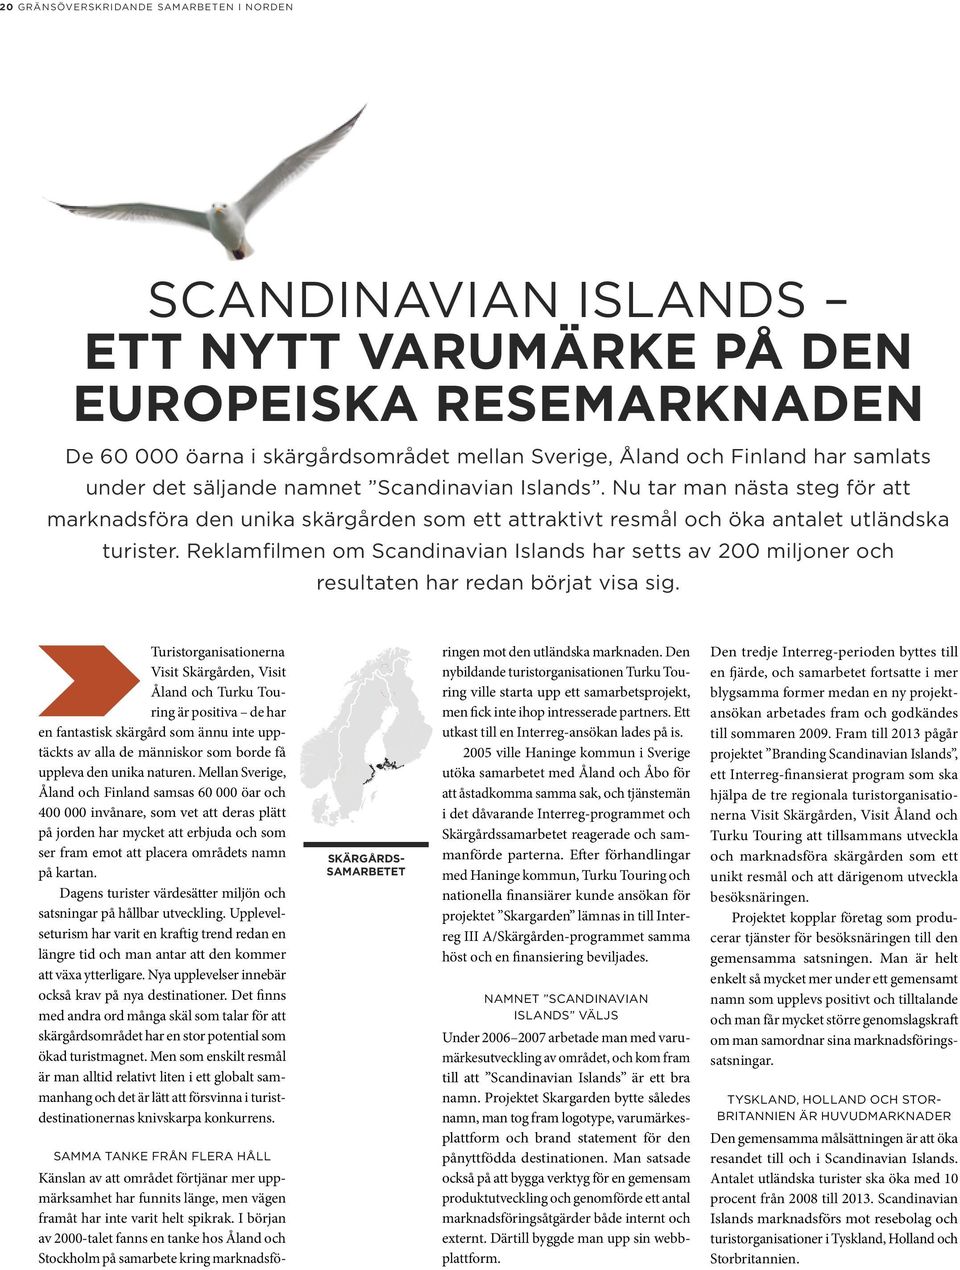 Reklamfilmen om Scandinavian Islands har setts av 200 miljoner och resultaten har redan börjat visa sig.